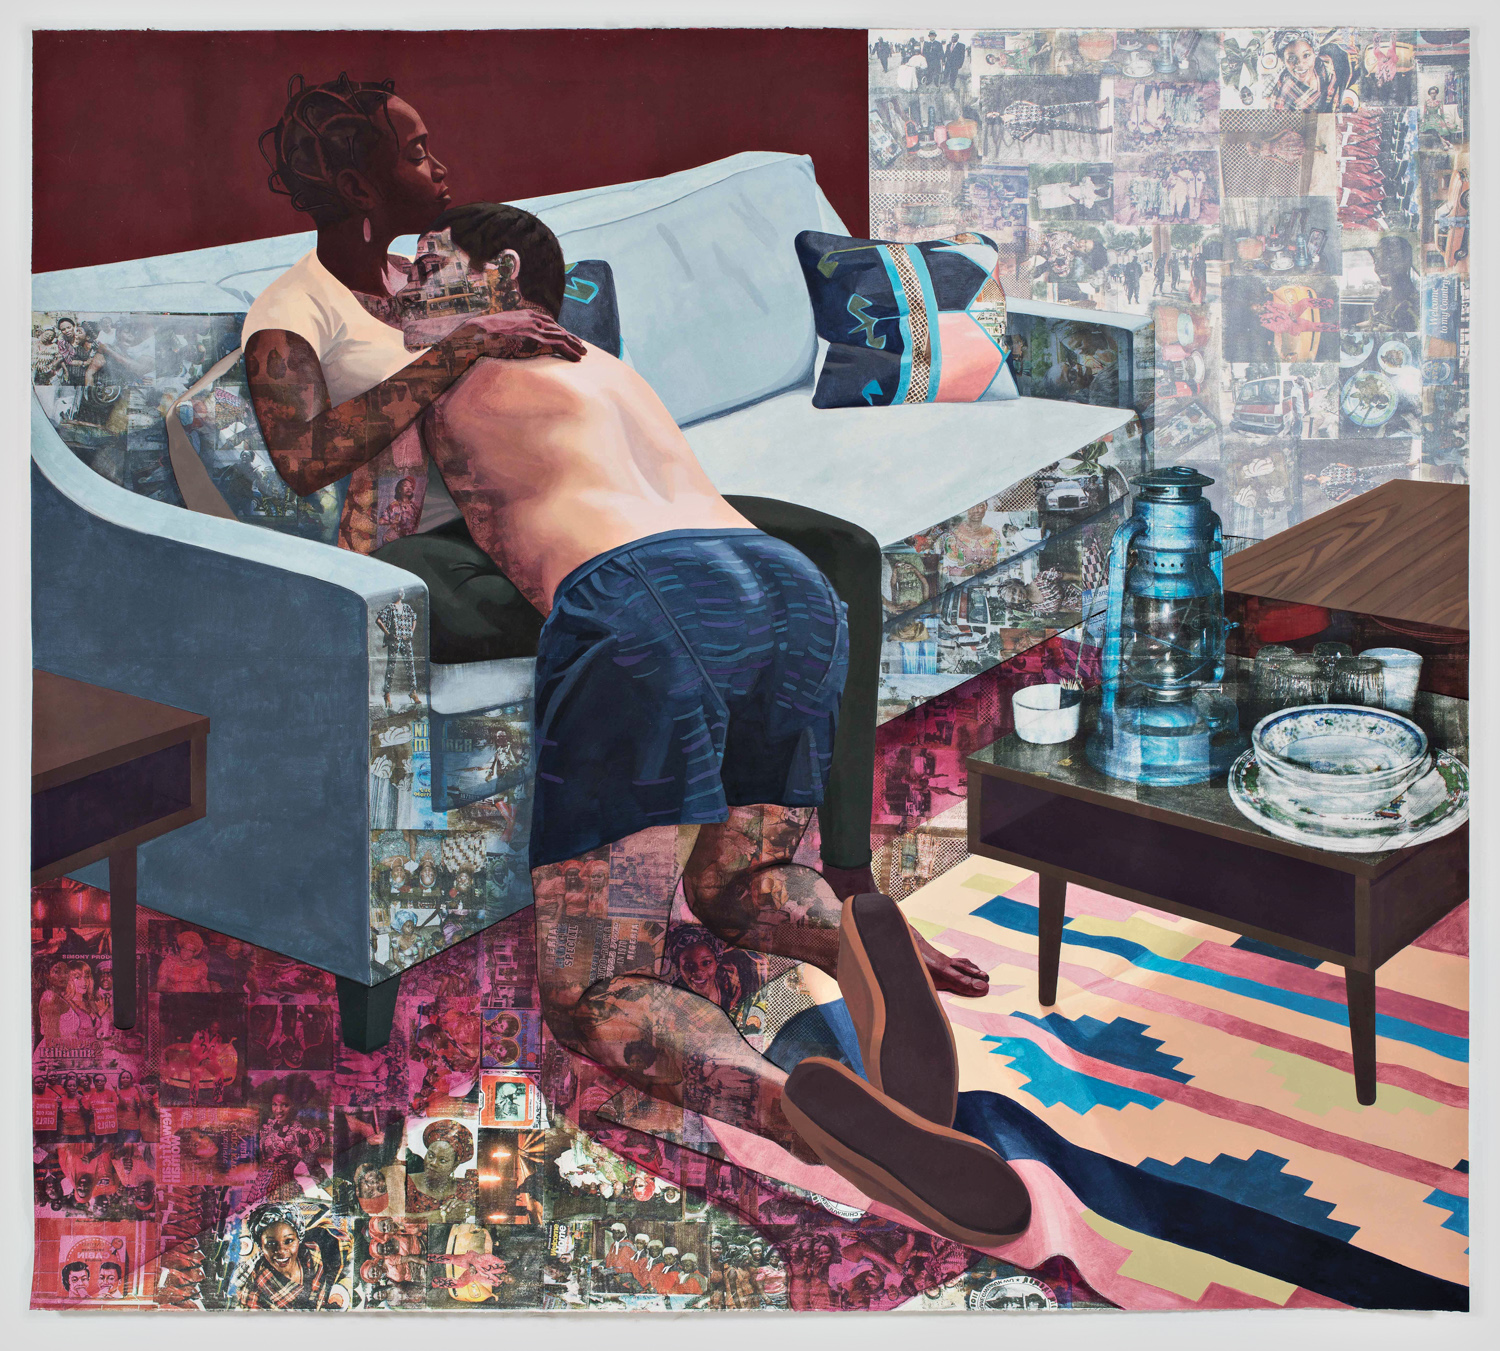 Ike Ya by Njideka Akunyili Crosby, a mixed-media artwork depicting two figures hugging on a couch